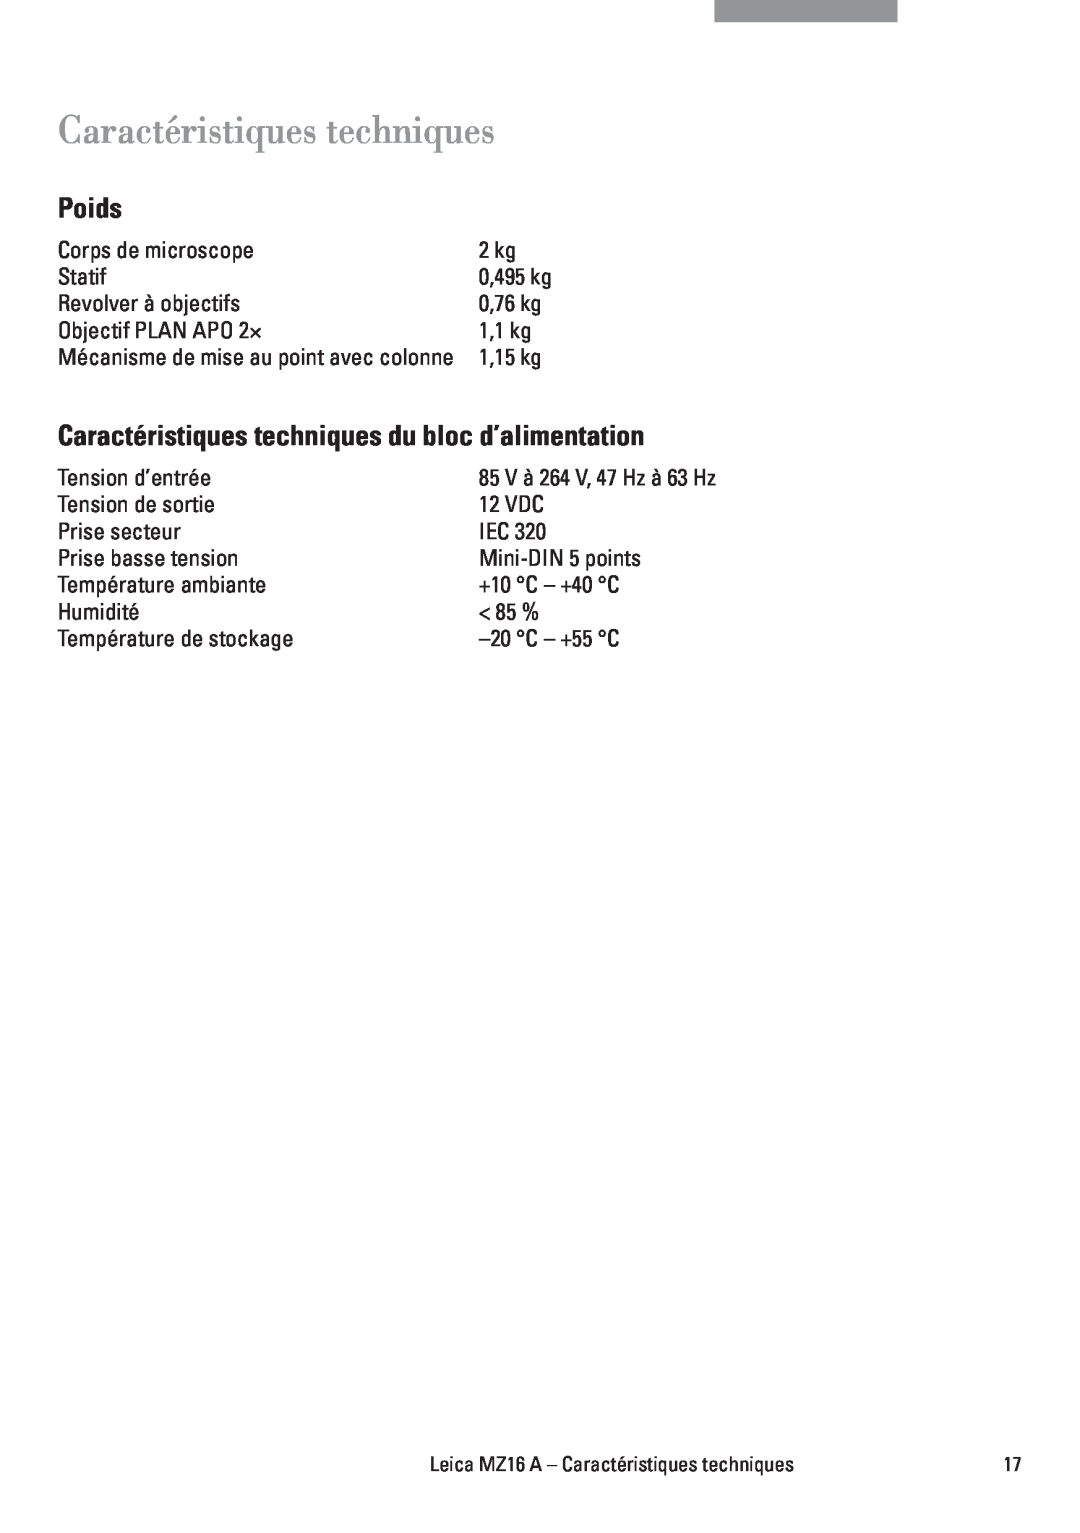 Leica MZ16A manuel dutilisation Poids, Caractéristiques techniques du bloc d’alimentation 